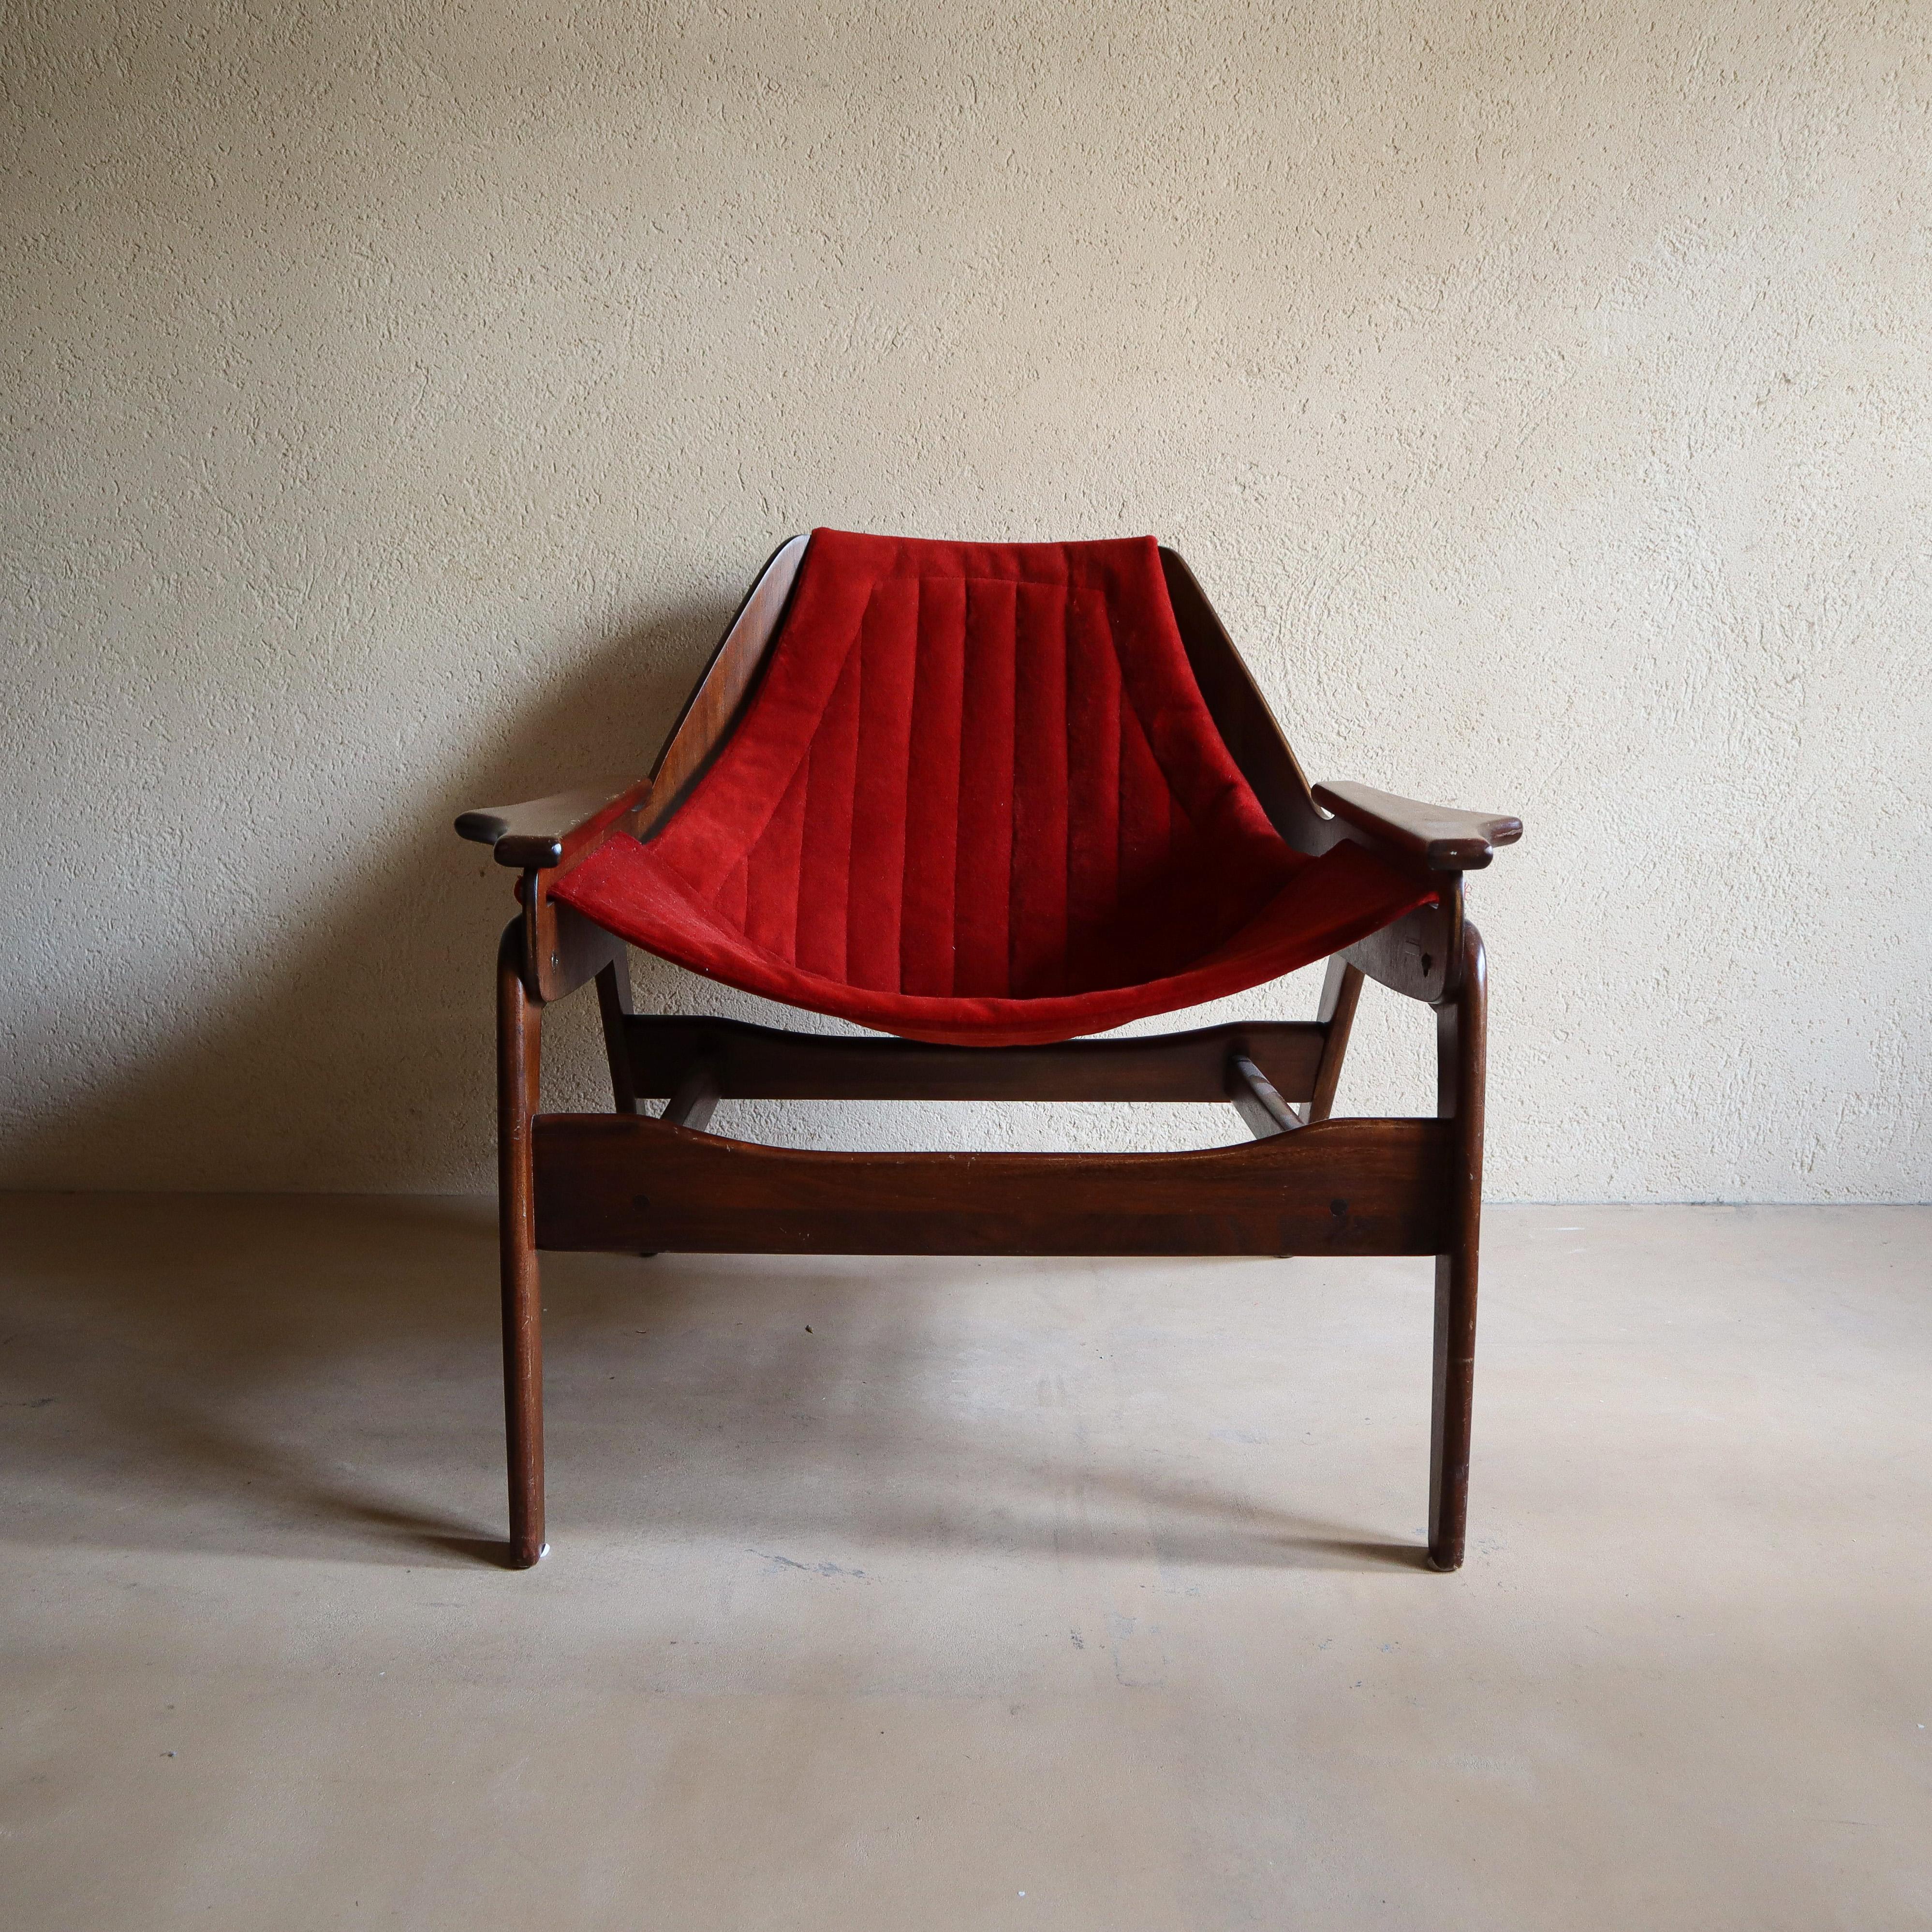 Icône du design moderne du milieu du siècle, cette chaise en bandoulière a été conçue par le designer de meubles californien Jerry Johnson dans les années 1960. Dotée d'un cadre en noyer massif et d'un revêtement en velours, cette chaise égayera